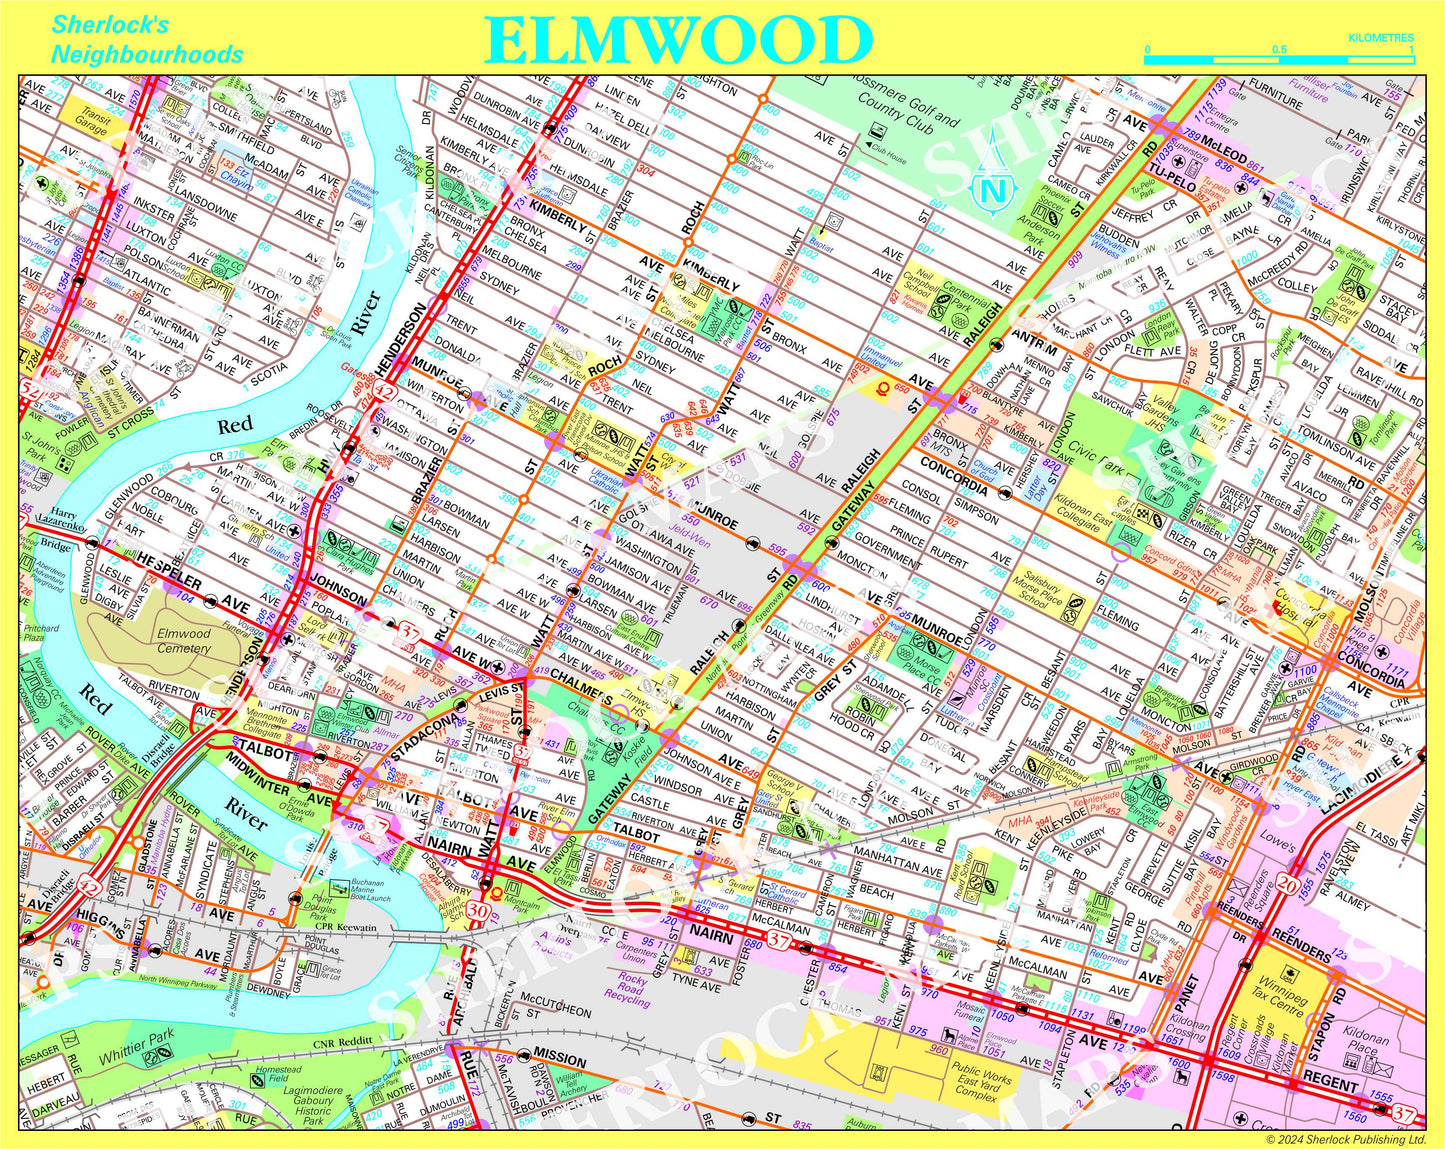 Elmwood - Sherlock's Neighbourhoods